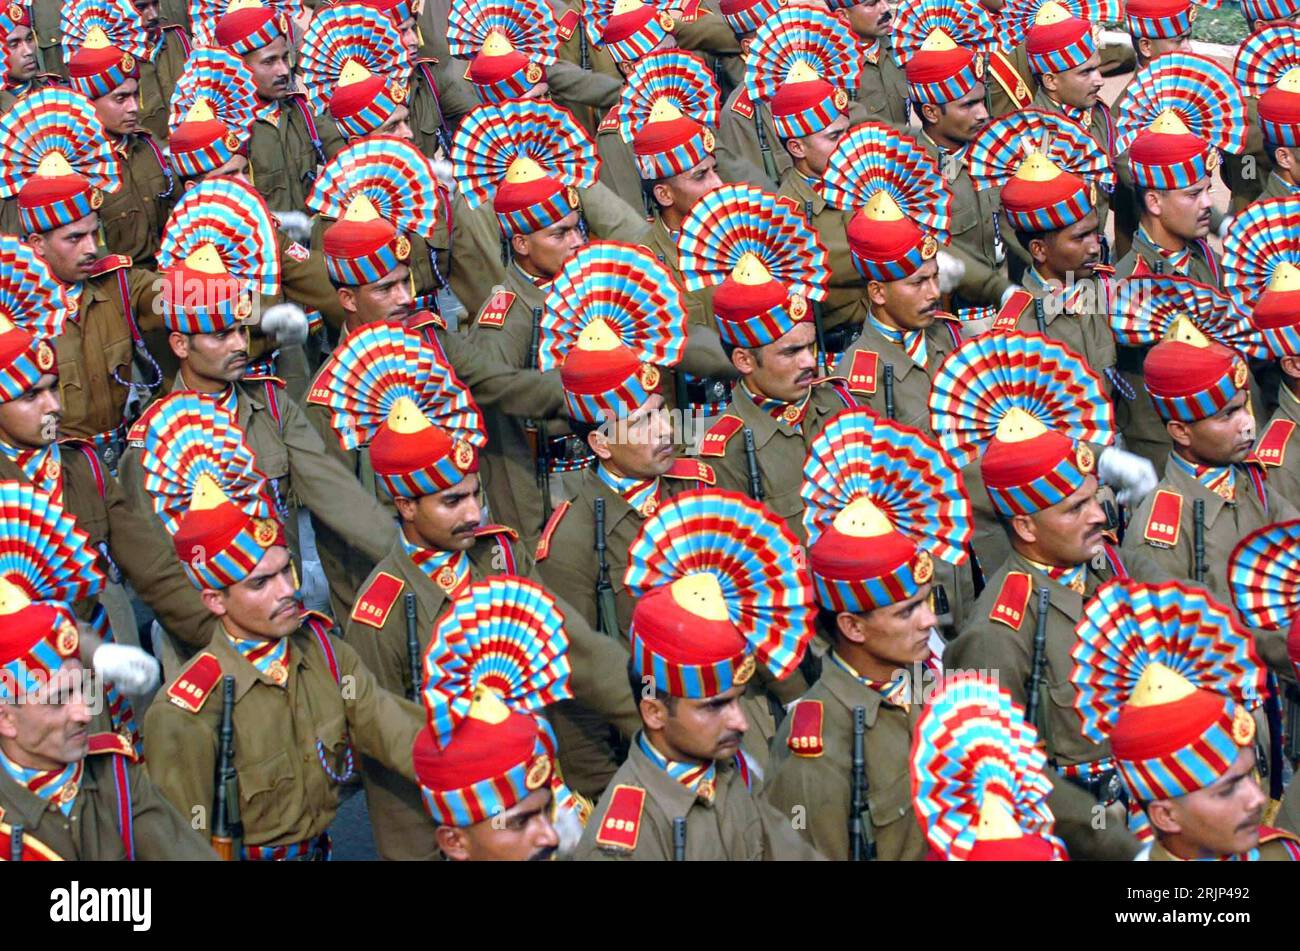 Bildnummer : 51084186 Datum : 18.01.2006 Copyright : imago/Xinhua Indische Soldaten marschieren während einer Probe für die Feierlichkeiten zum 57. Jahrestag der Unabhängigkeit in Neu Delhi - PUBLICATIONxNOTxINxCHN, Personen ; 2006, Neu Delhi, Jahrestag, Jahrestage, Unabhängigkeitstag, Tag der Republik, Nationalfeiertag, Feier, feiern, Jubiläum, Jubiläen, Militärparade, Militärparaden, parade, Paraden, Soldaten, Soldat, Armee, Armeen, marschiert, marschierend, Marsch, indische,; , quer, Kbdig, totale, Indien, , Militaer, Staat, Banque D'Images